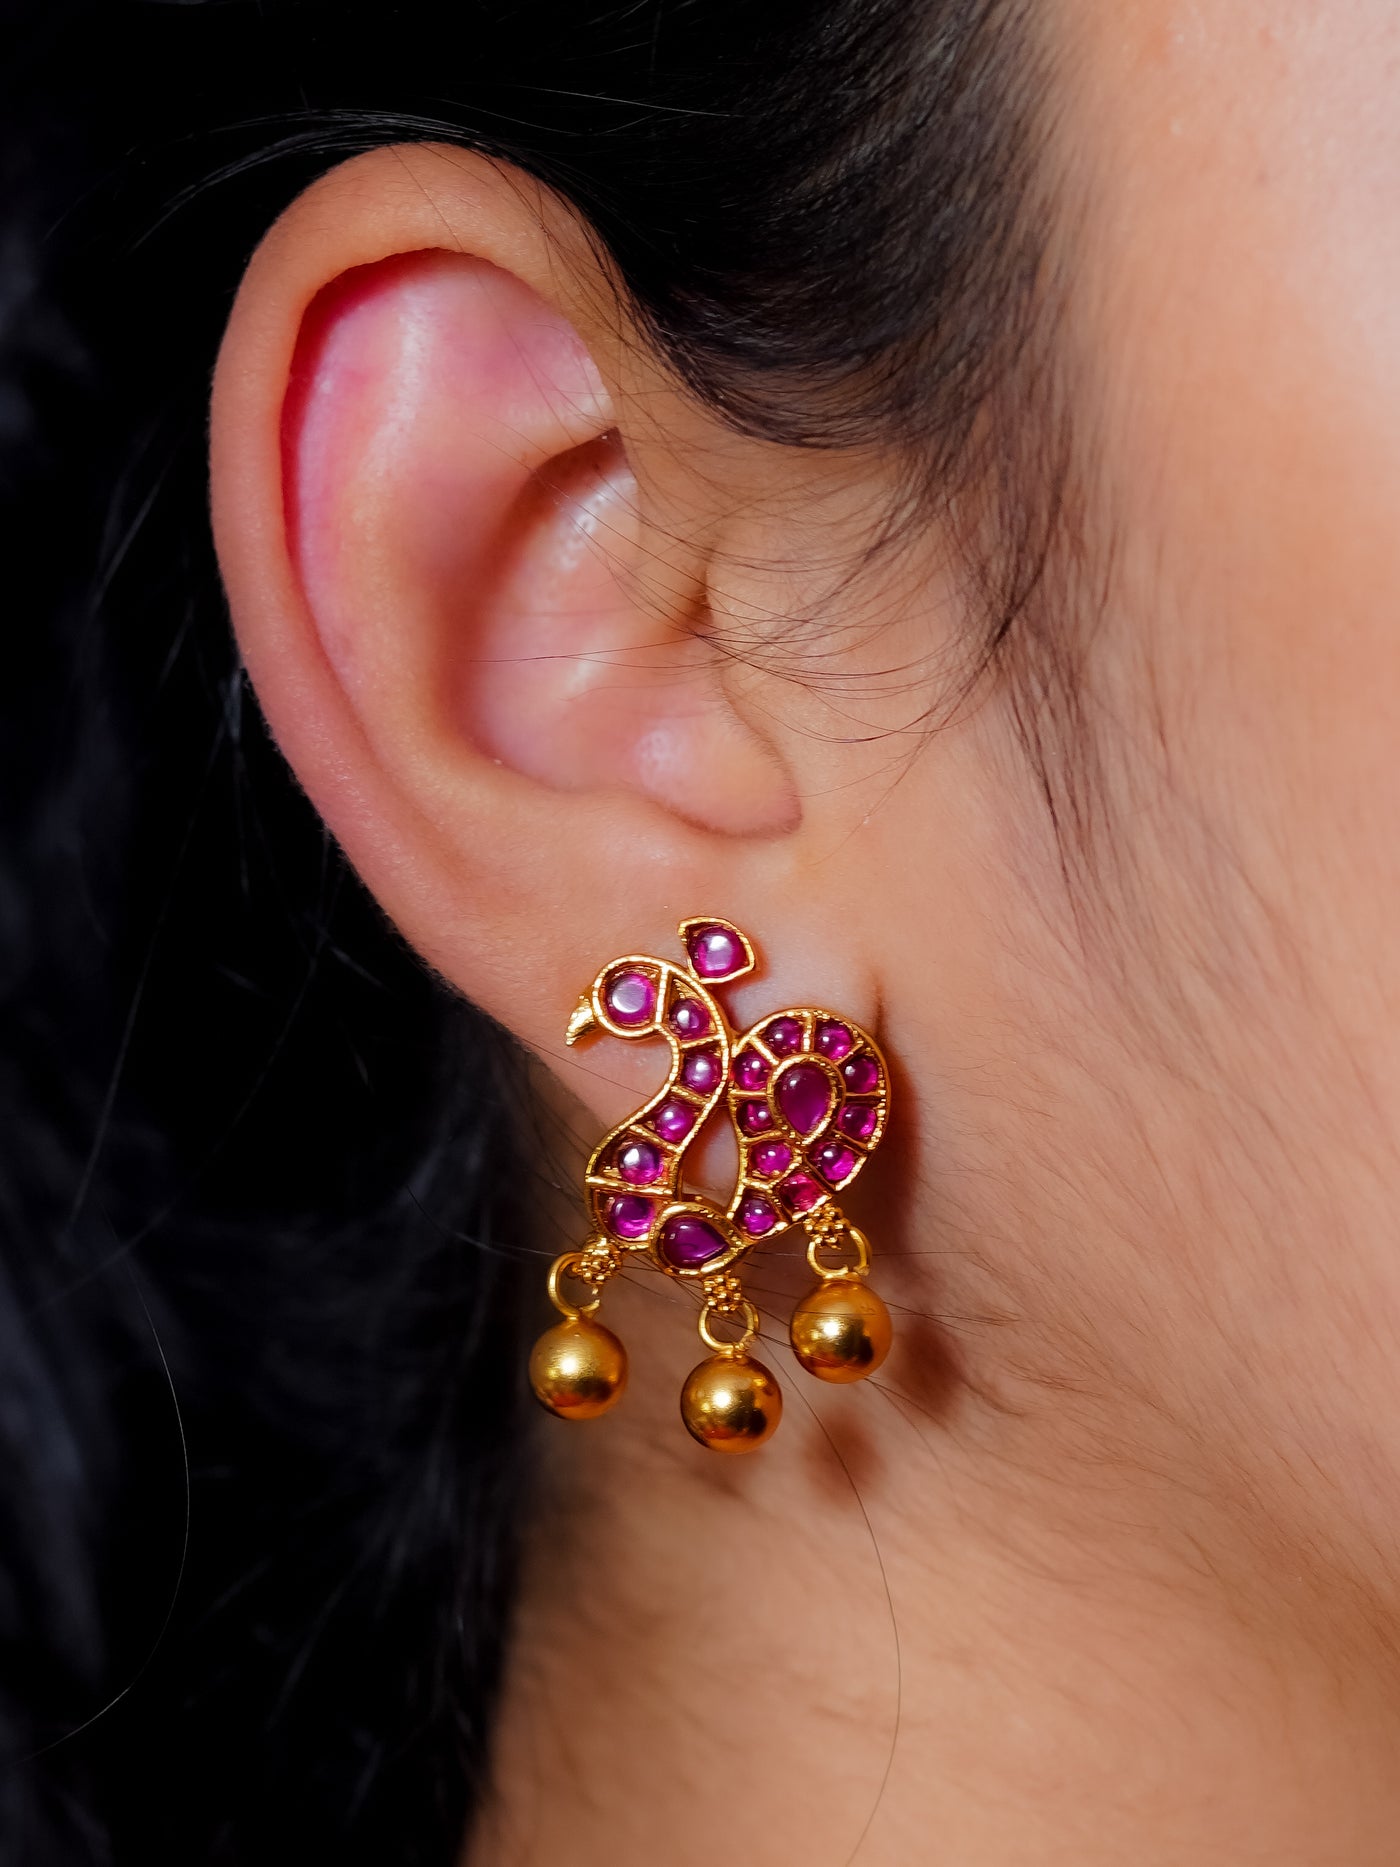 Studs,templestuds,temple earrings,temple earrings online,temple jewellery,kemp earrings,kemp studs